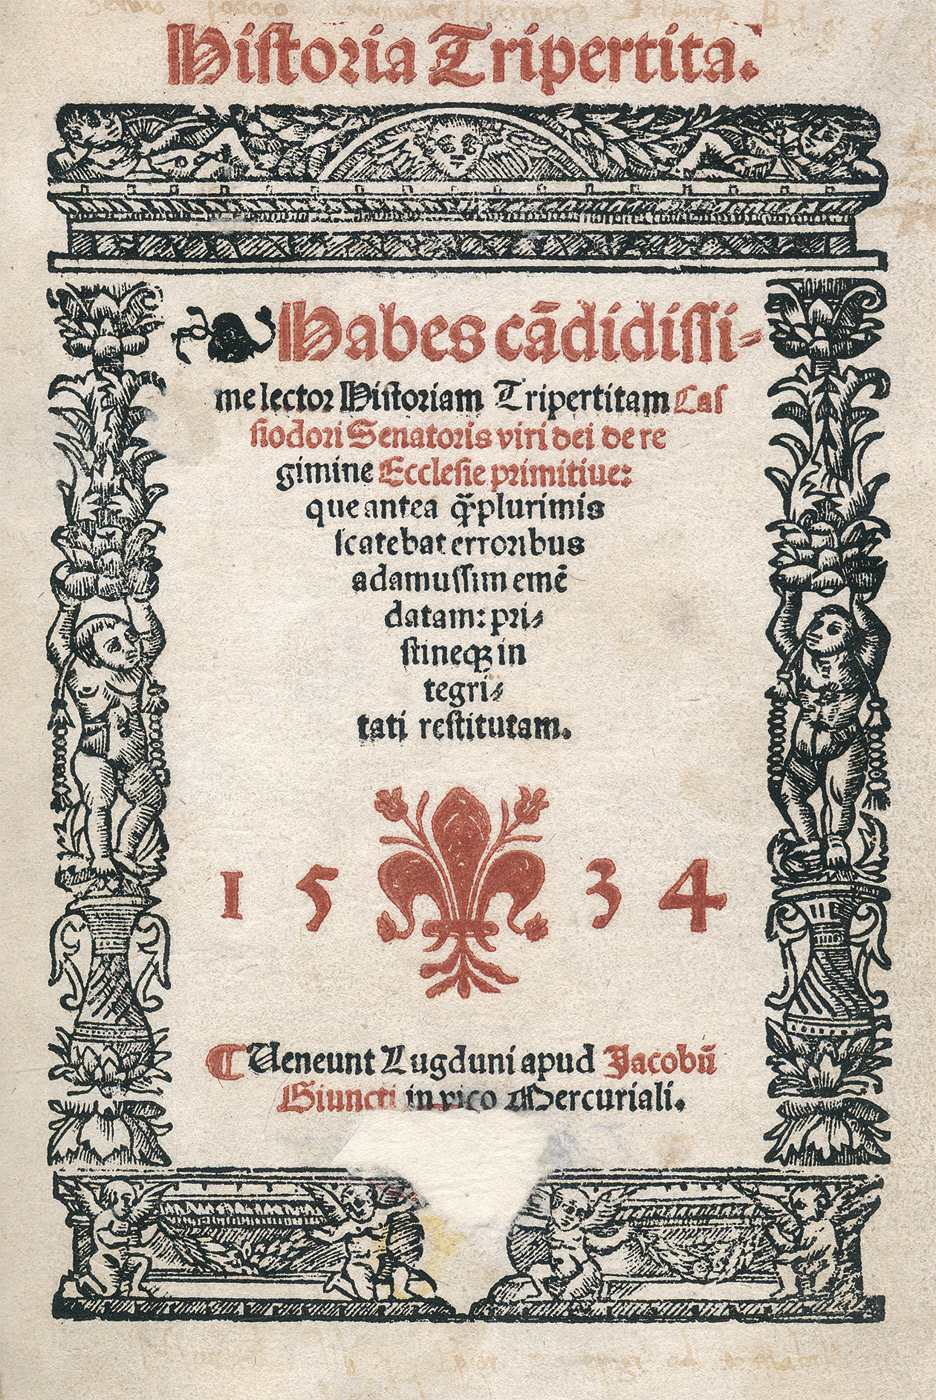 Lot 1083, Auction  115, Cassiodorus, Flavius Magnus Aurelius, Historia tripertita